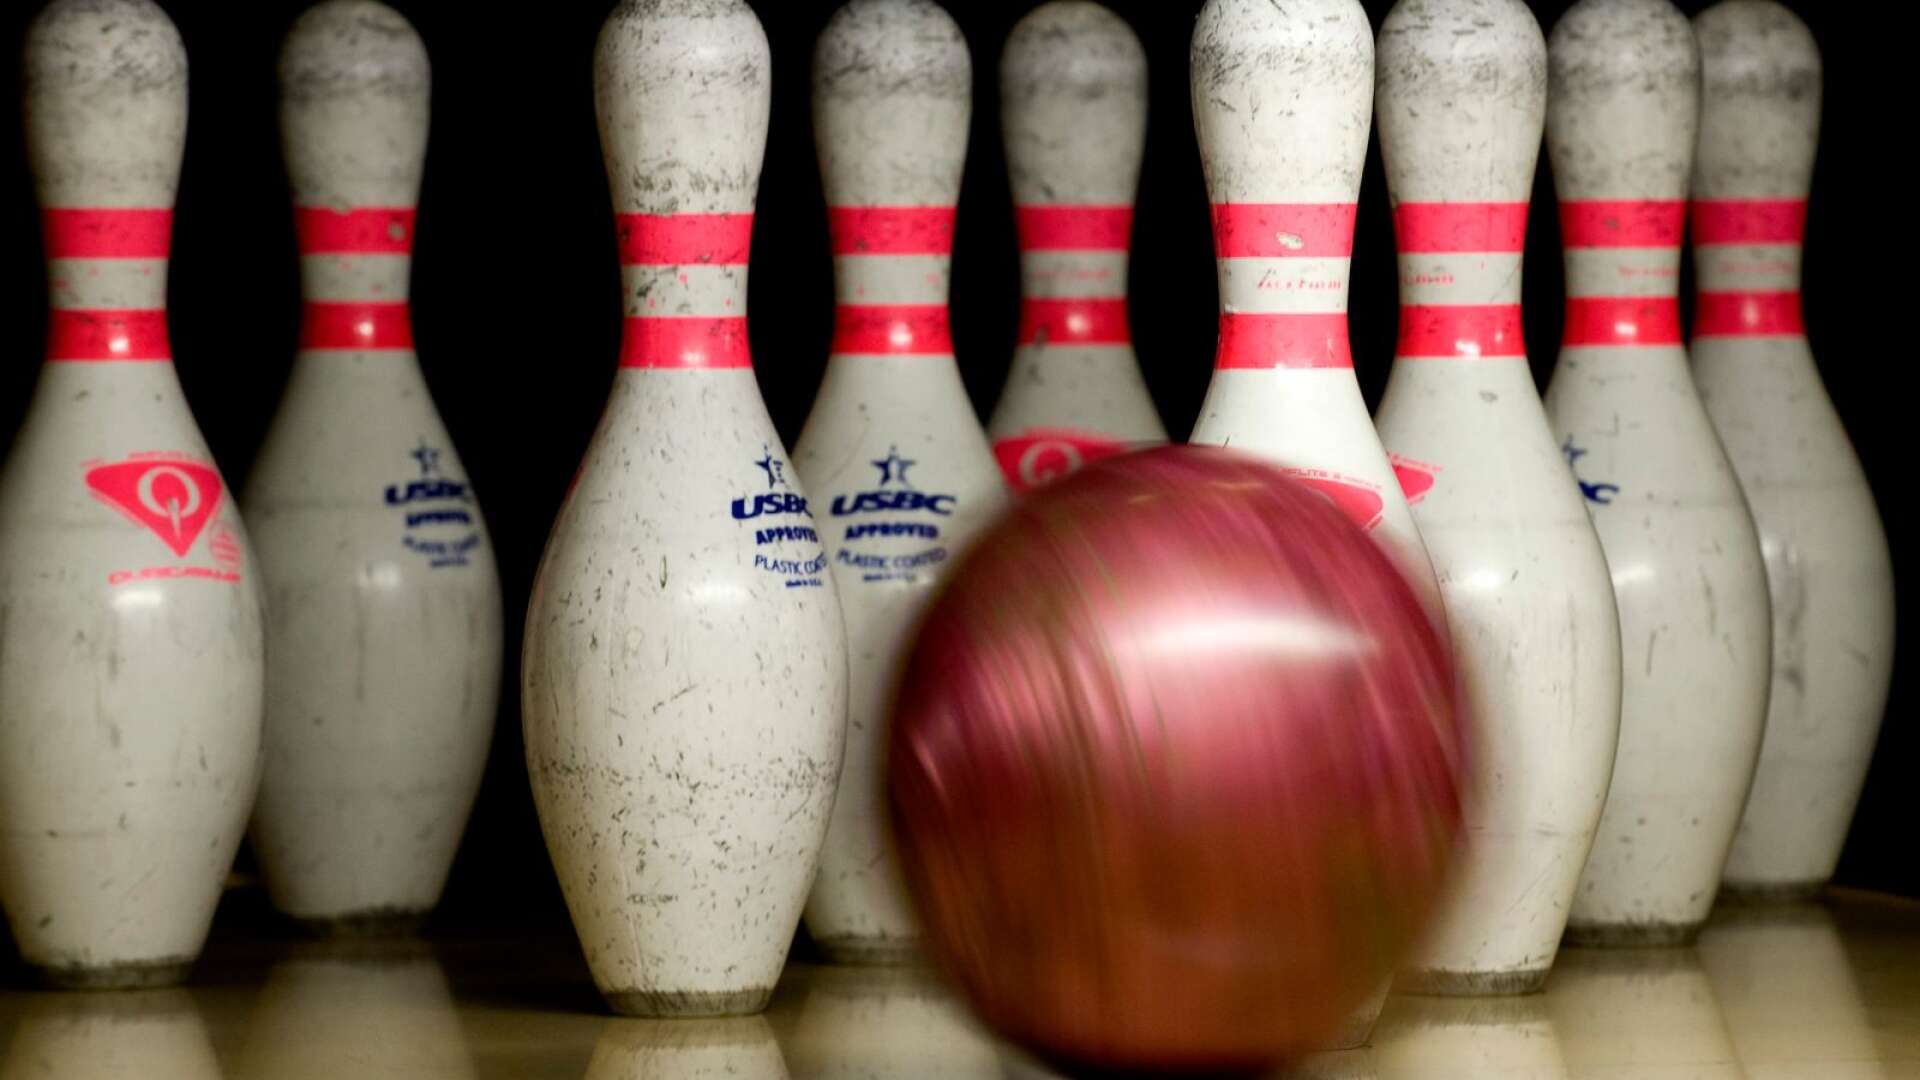 Kommunens bowlinghall är inte anpassad för tävlingsverksamhet, anser Centerpartiets fullmäktigegrupp. 